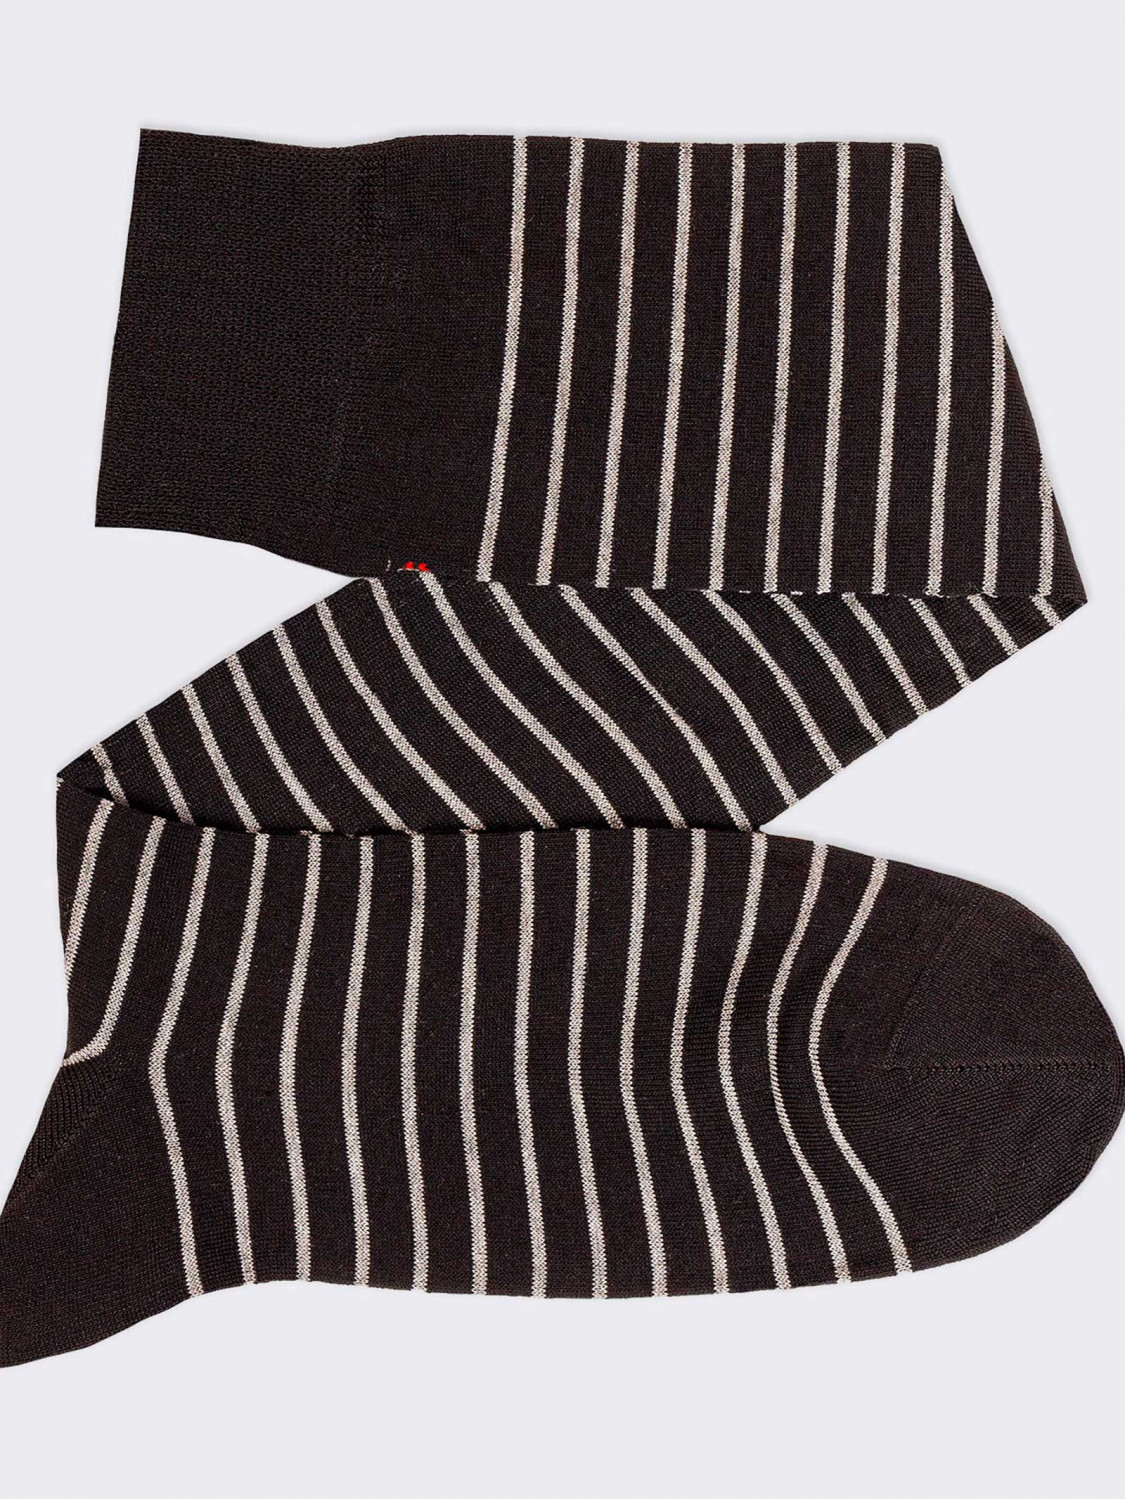 Gestreifte, gemusterte lange Socken aus kühler Baumwolle